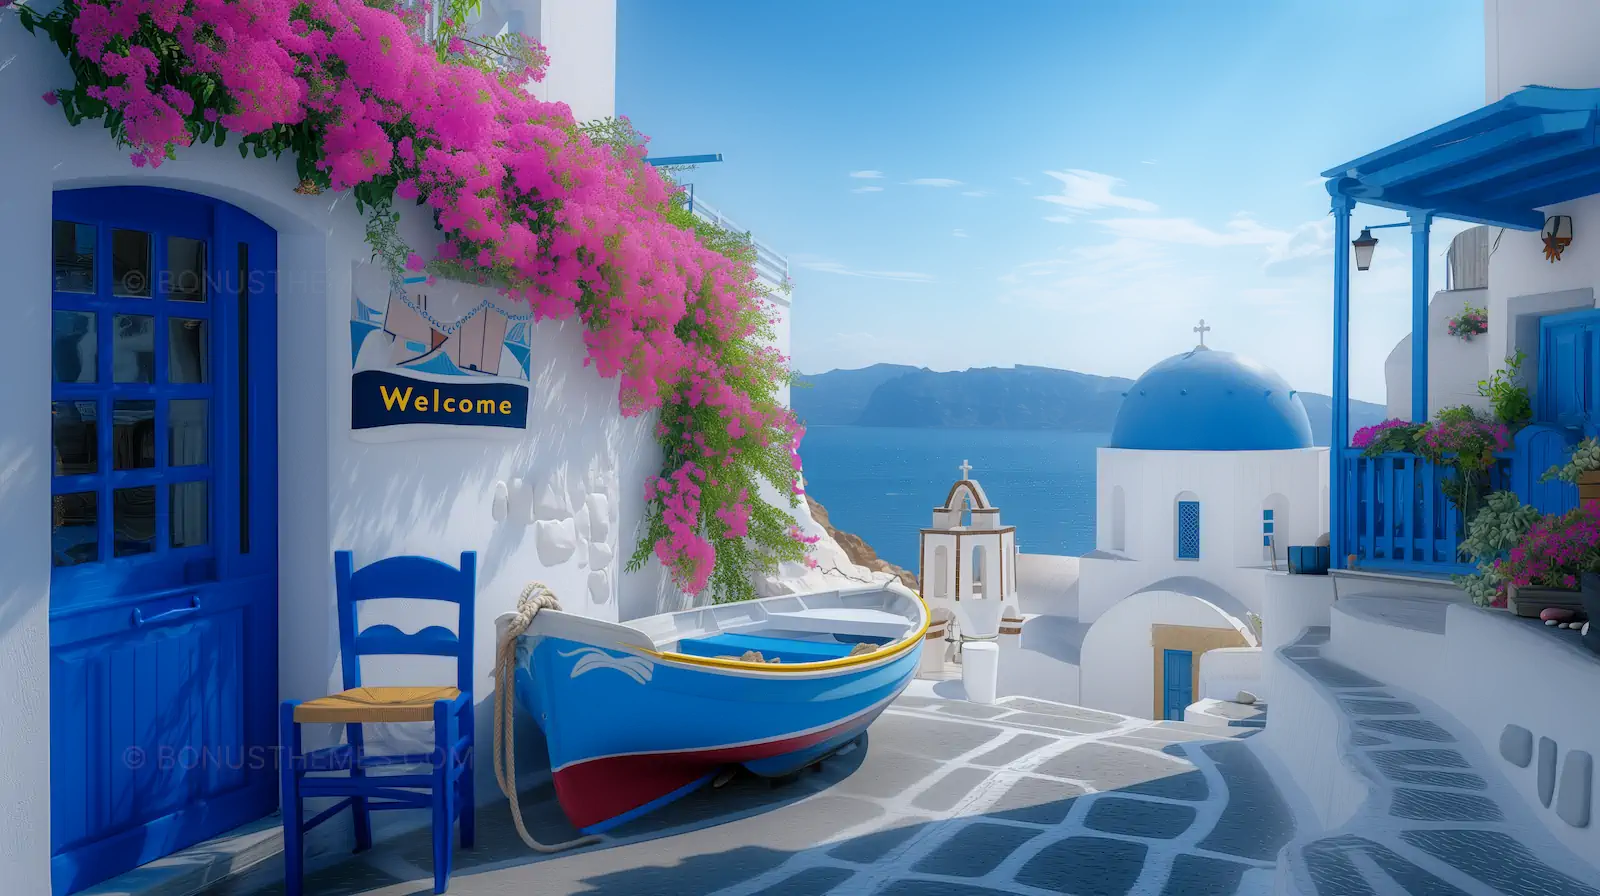 Santorini street serenity, white buildings, blue Shutters